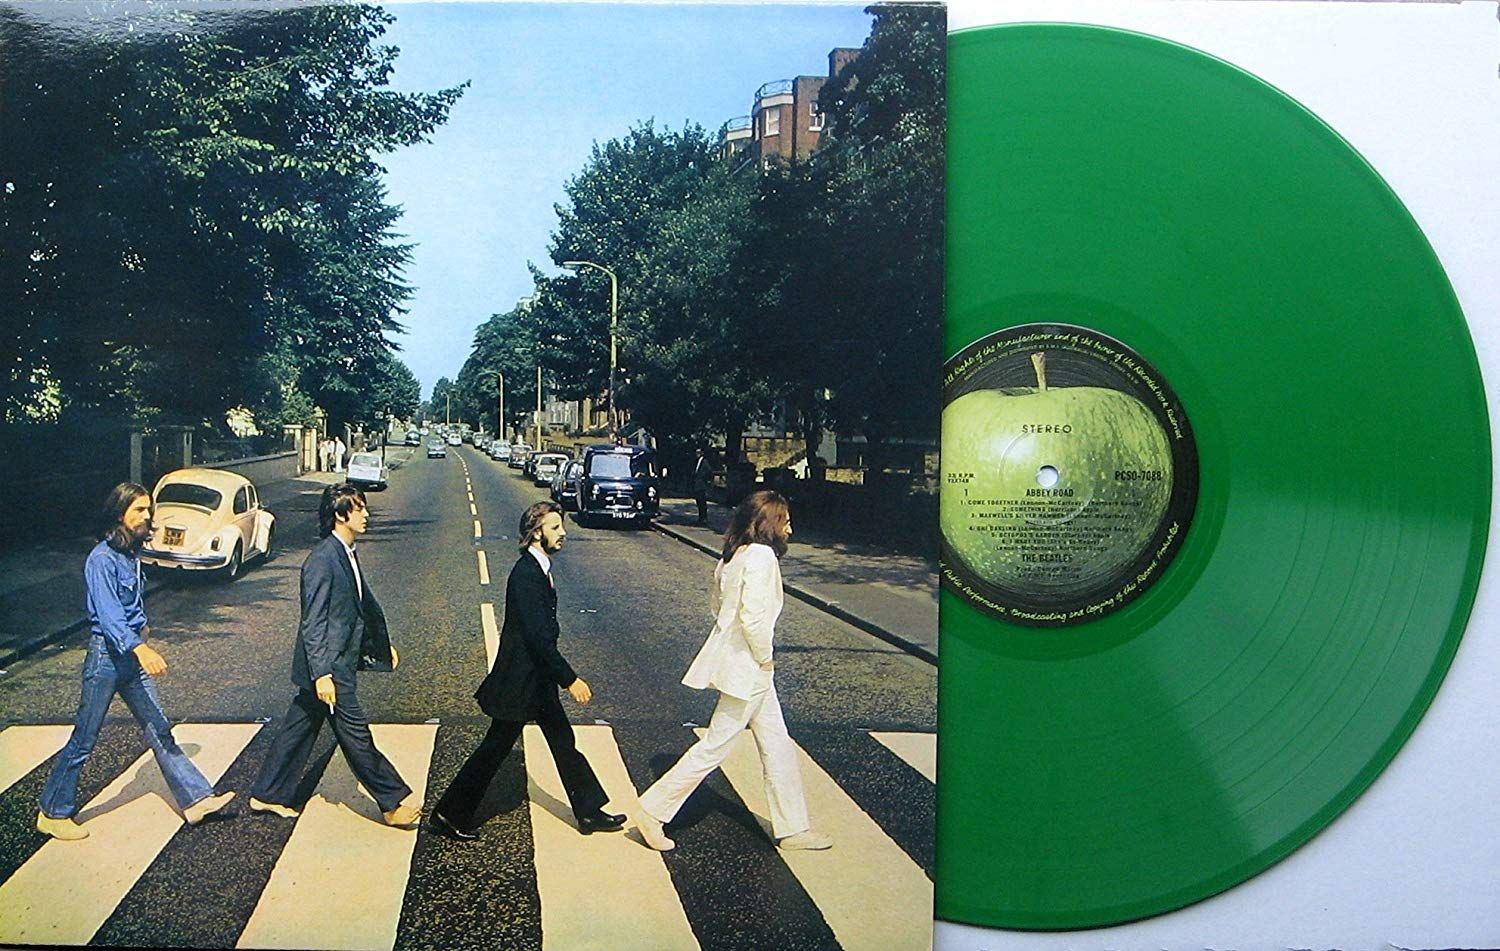 The Beatles' Abbey Road on vinyl